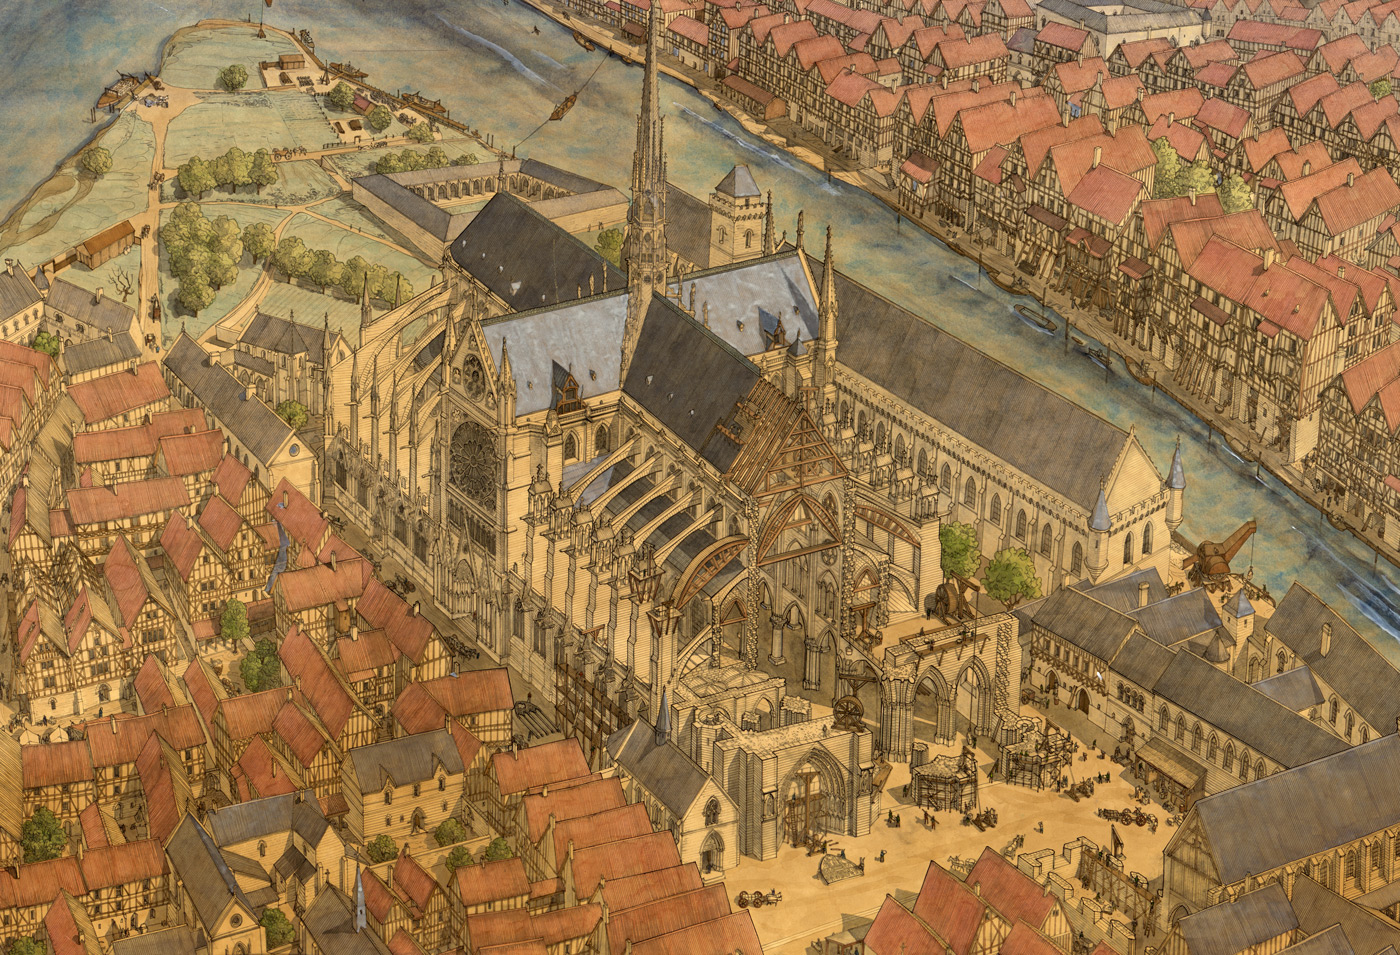 Средневековый город западной европы. Франция XV век. Средневековый Париж 15 век. Средневековый Лувр в Париже. Средневековая Западная Европа Франция Людовик.